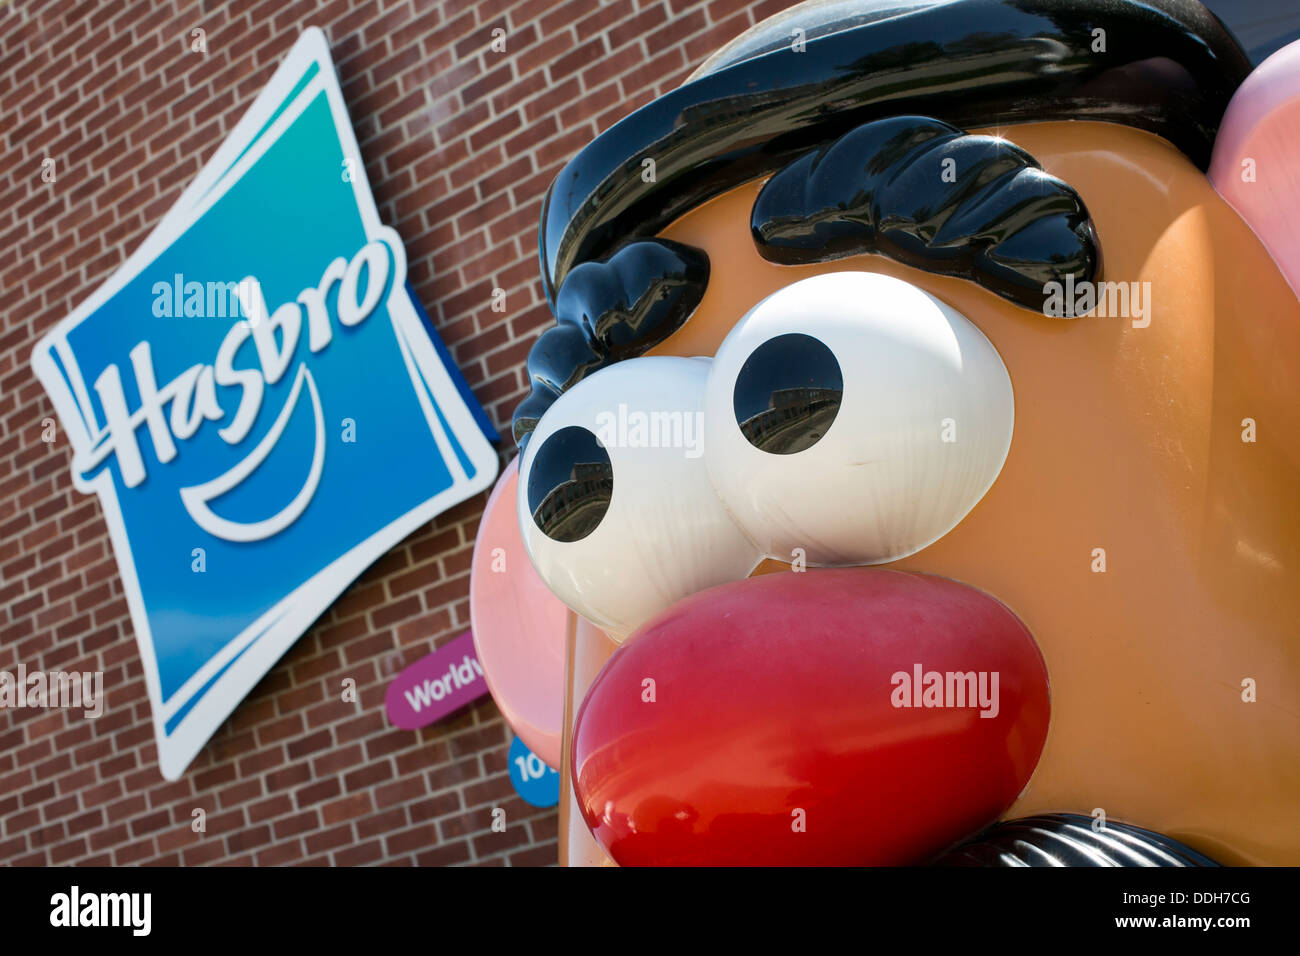 Das Hauptquartier der Spielzeughersteller Hasbro, mit einem riesigen Mr. Potato Head-Figur. Stockfoto